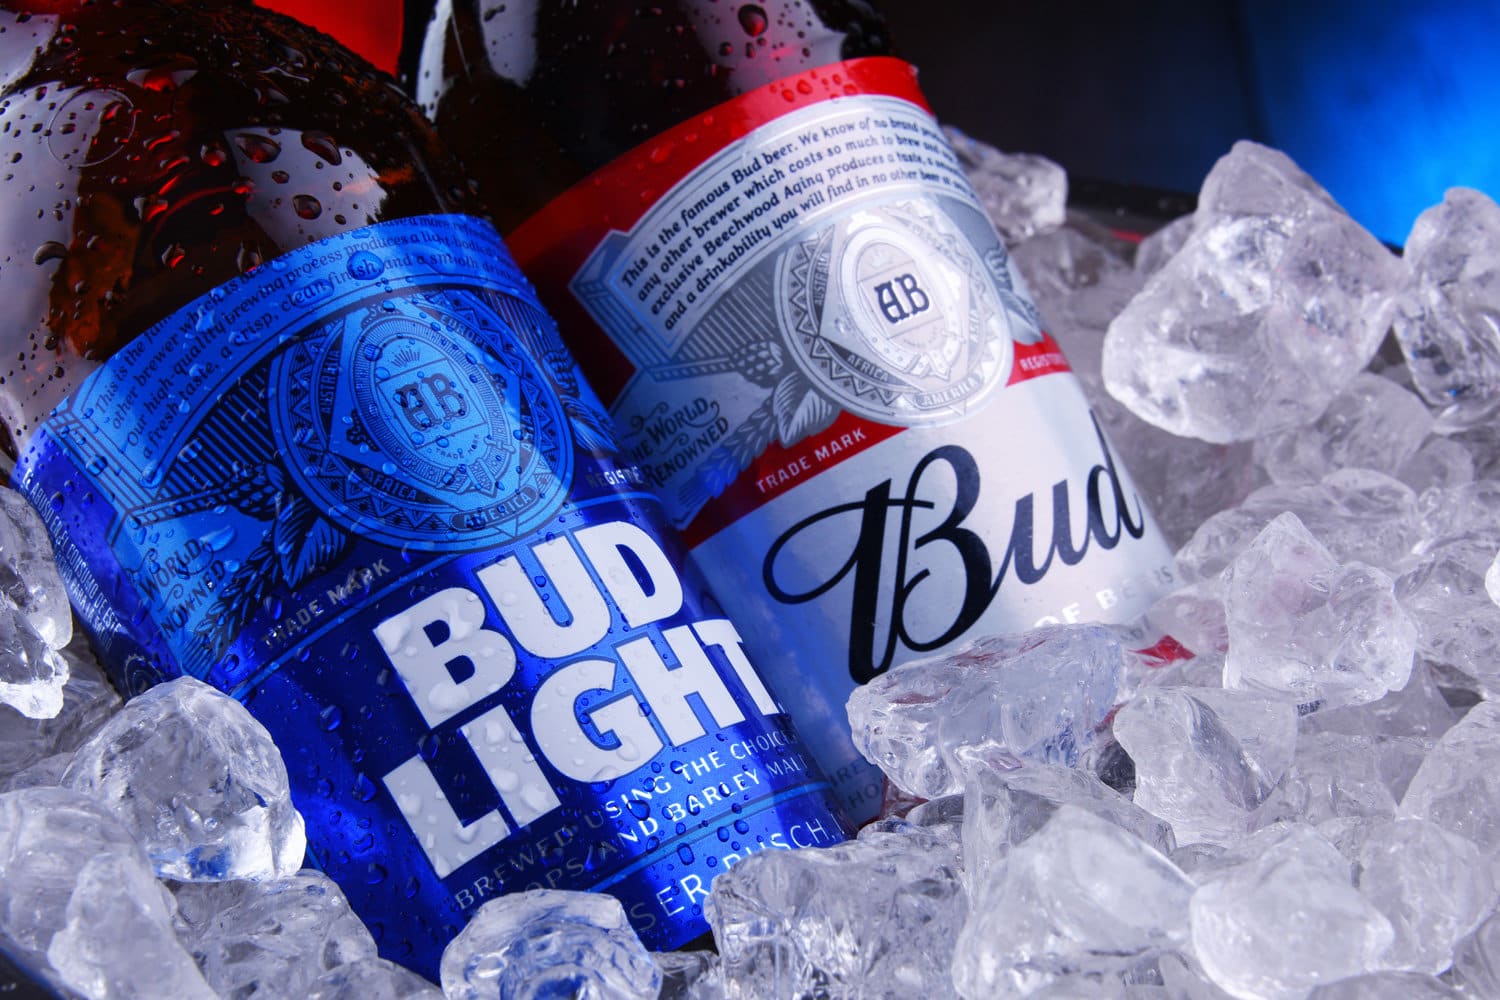 安海斯-布希公司生产的美国流行啤酒Bud和Bud Light。